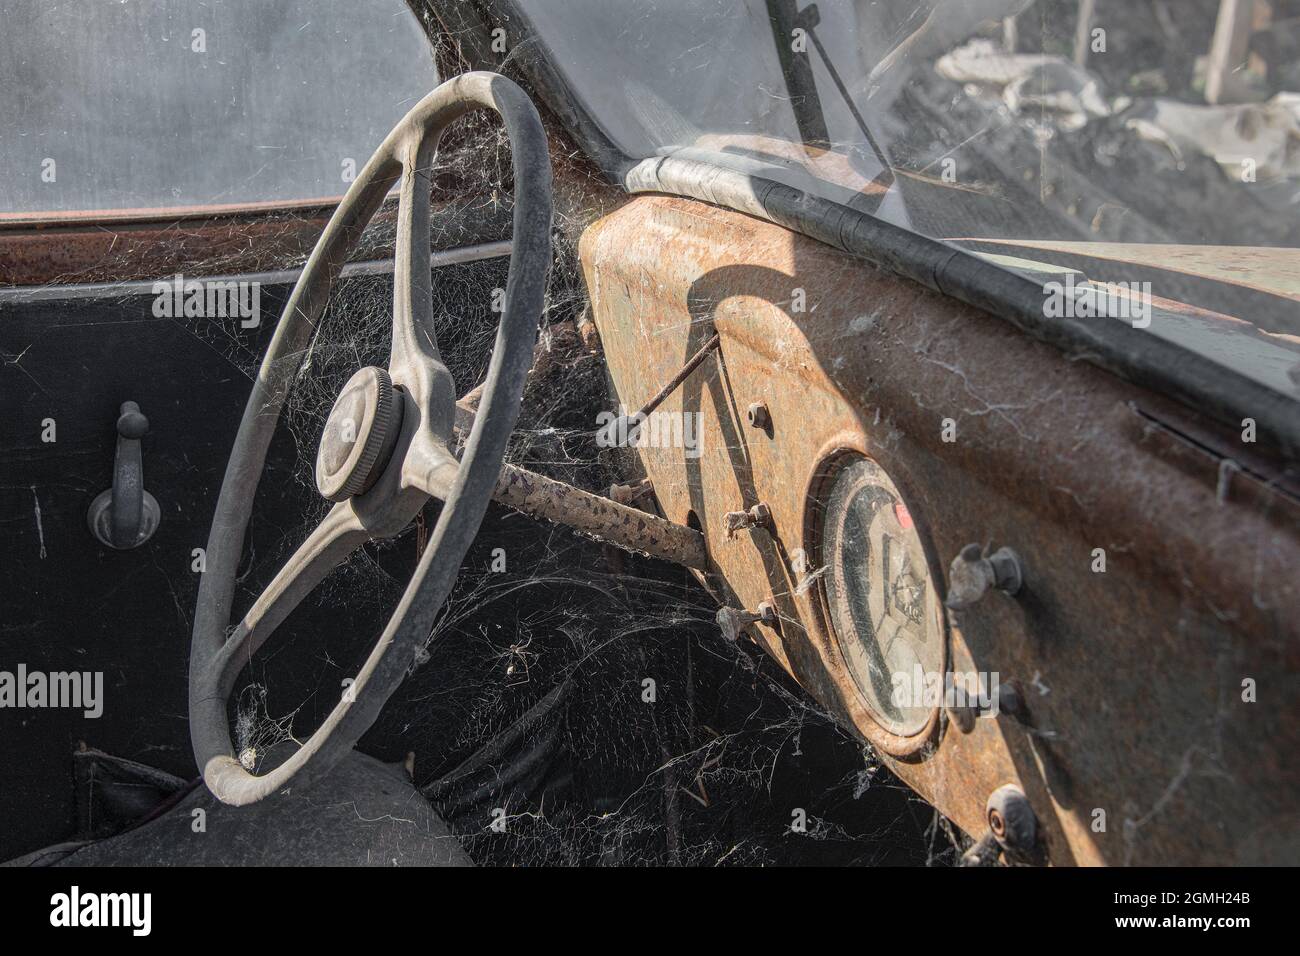 une image rapprochée d'une vieille voiture rétro rouillée. Il s'agit d'une conduite à gauche qui montre le volant et le tableau de bord couverts de rouille et de pavée Banque D'Images